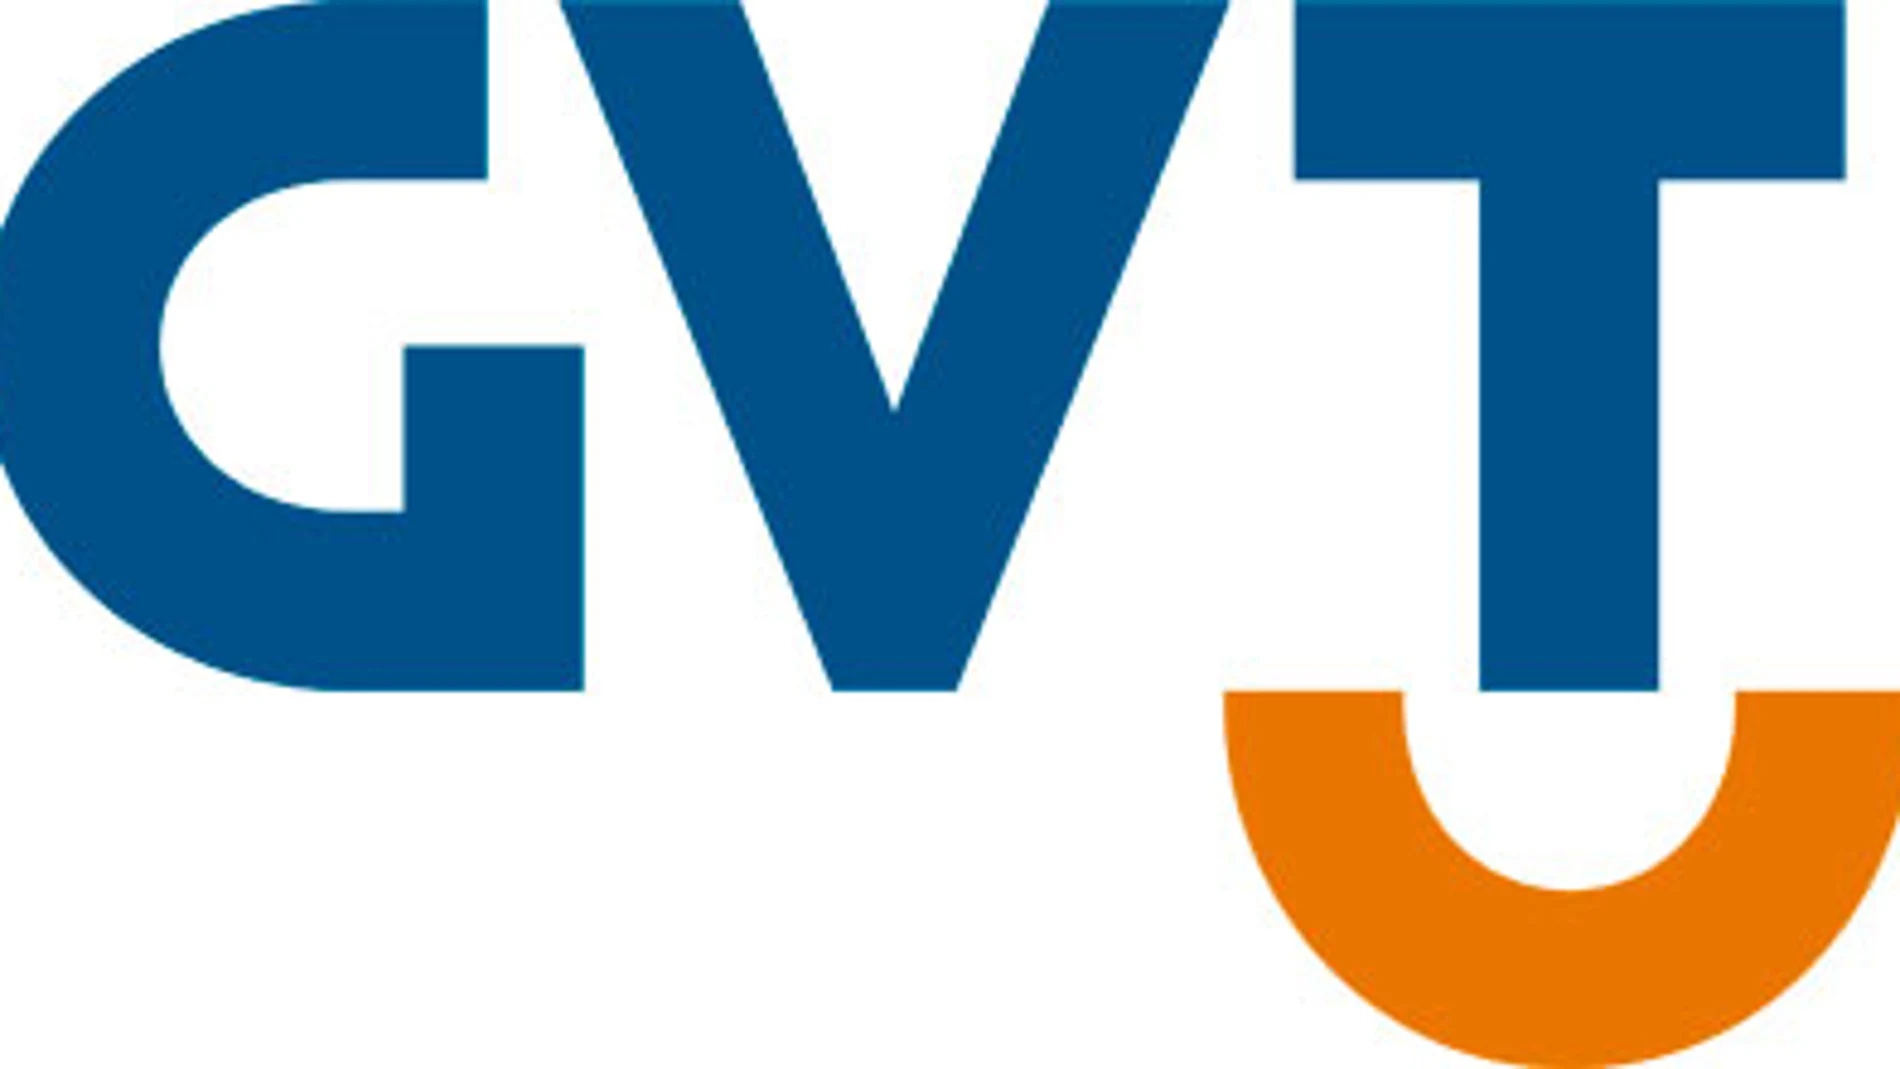 Competencia brasileña aprueba «con condiciones» la compra de GVT por Telefónica